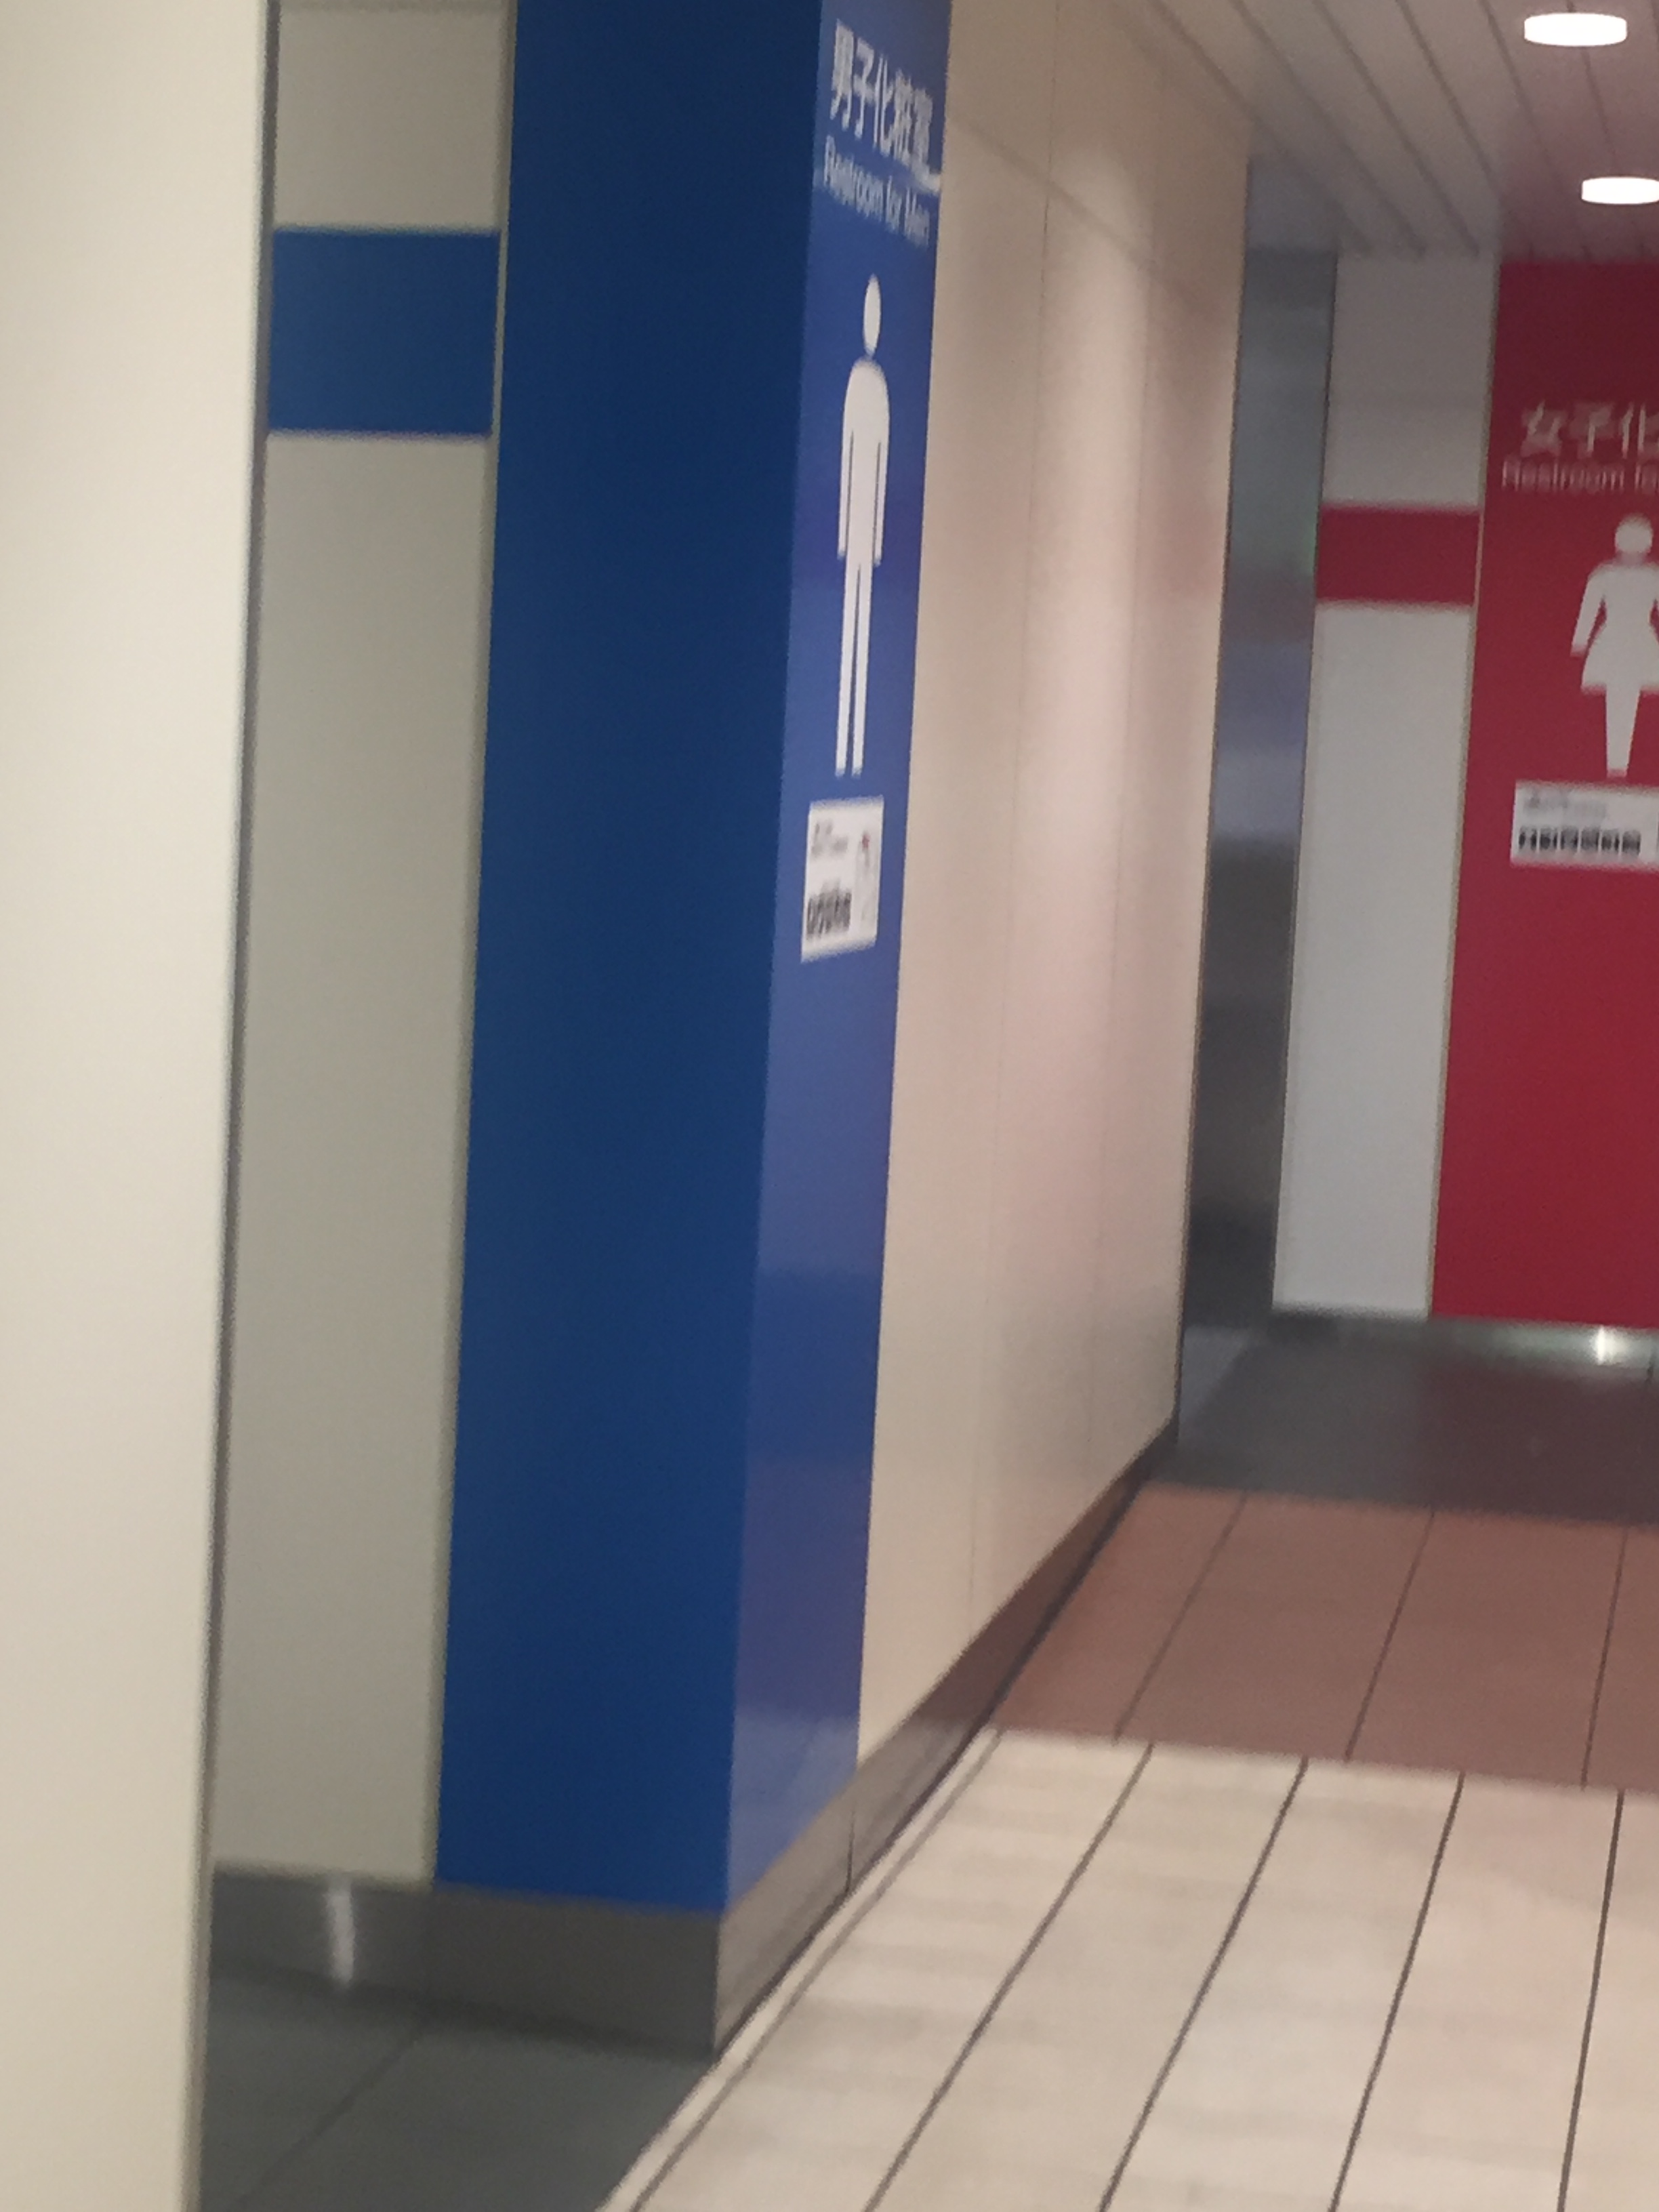 ここへ到着する 大宮 駅 トイレ 選択した画像コレクション